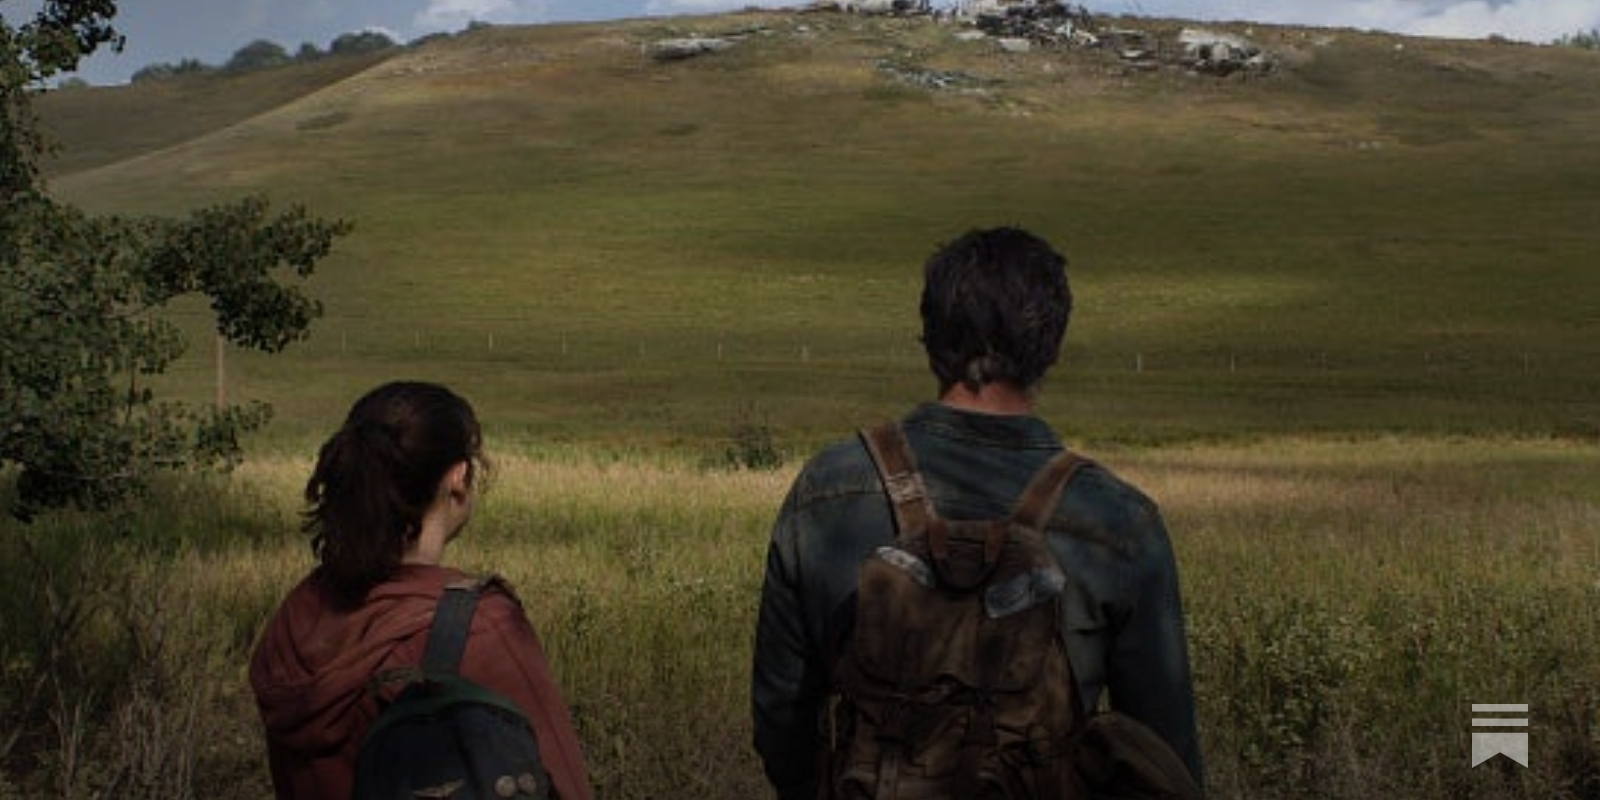 Por que The Last of Us é a melhor adaptação já feita de um game